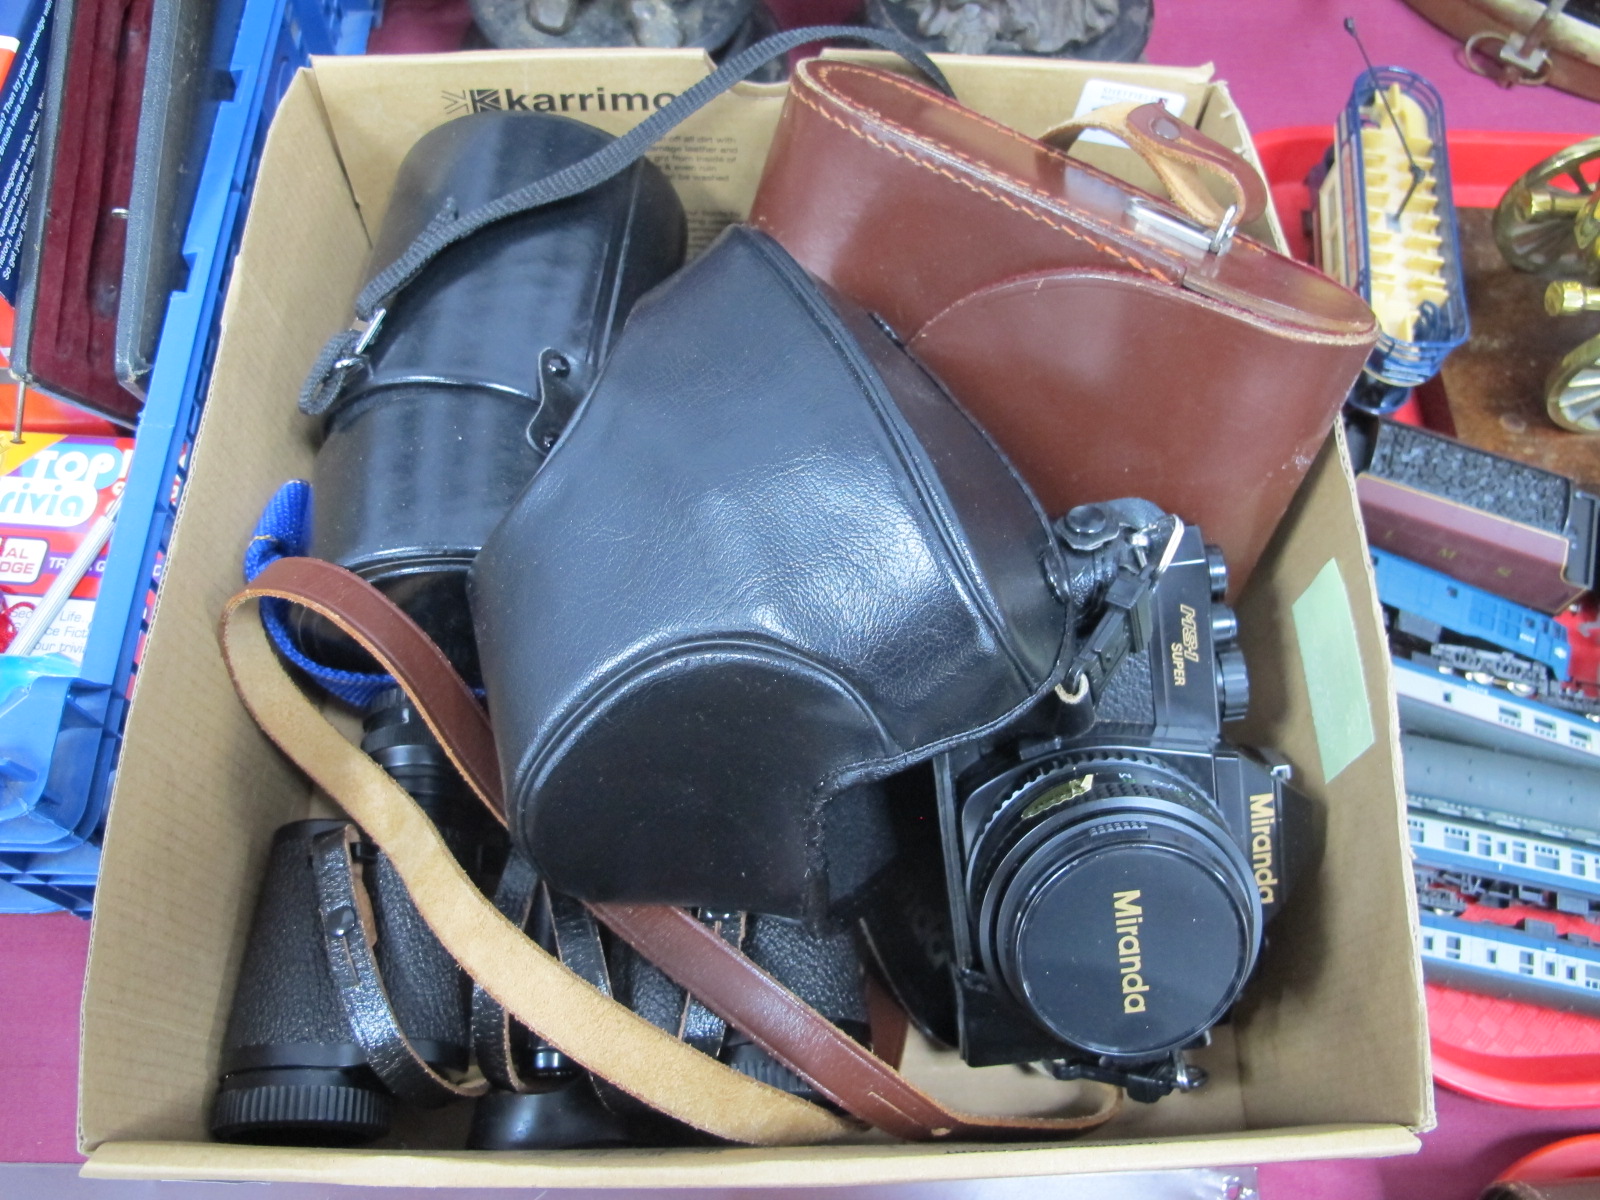 Miranda MS-1 Super Camera, having 50mm lens; Hanimex 500mm lens, Carl Zeiss 8 x 30 binoculars.